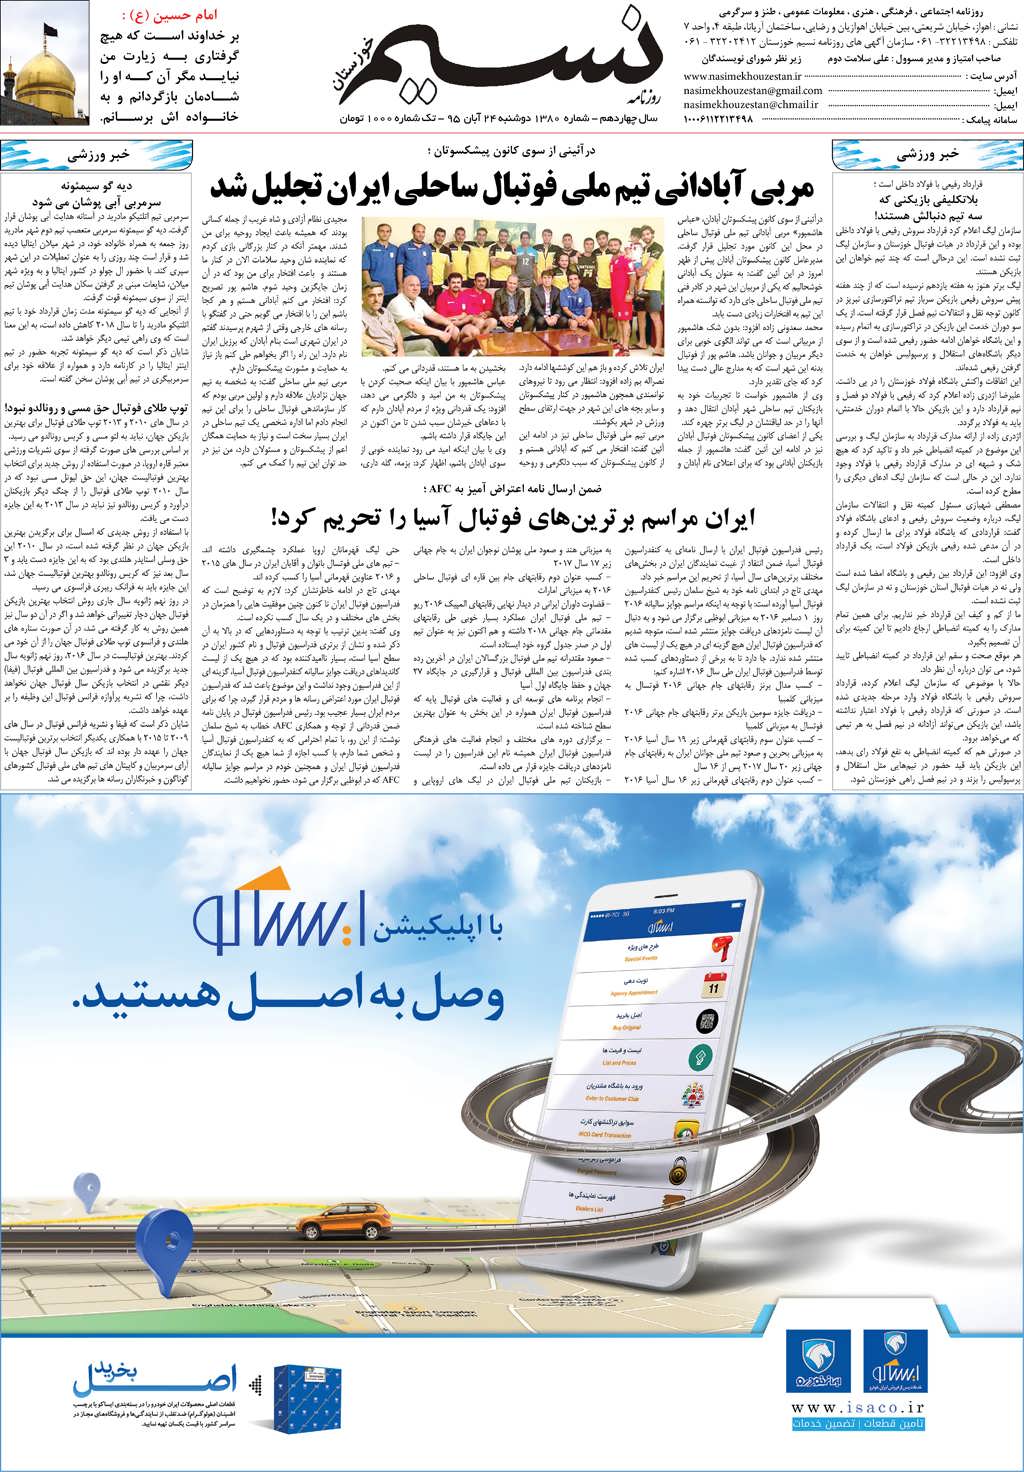 صفحه آخر روزنامه نسیم شماره 1380